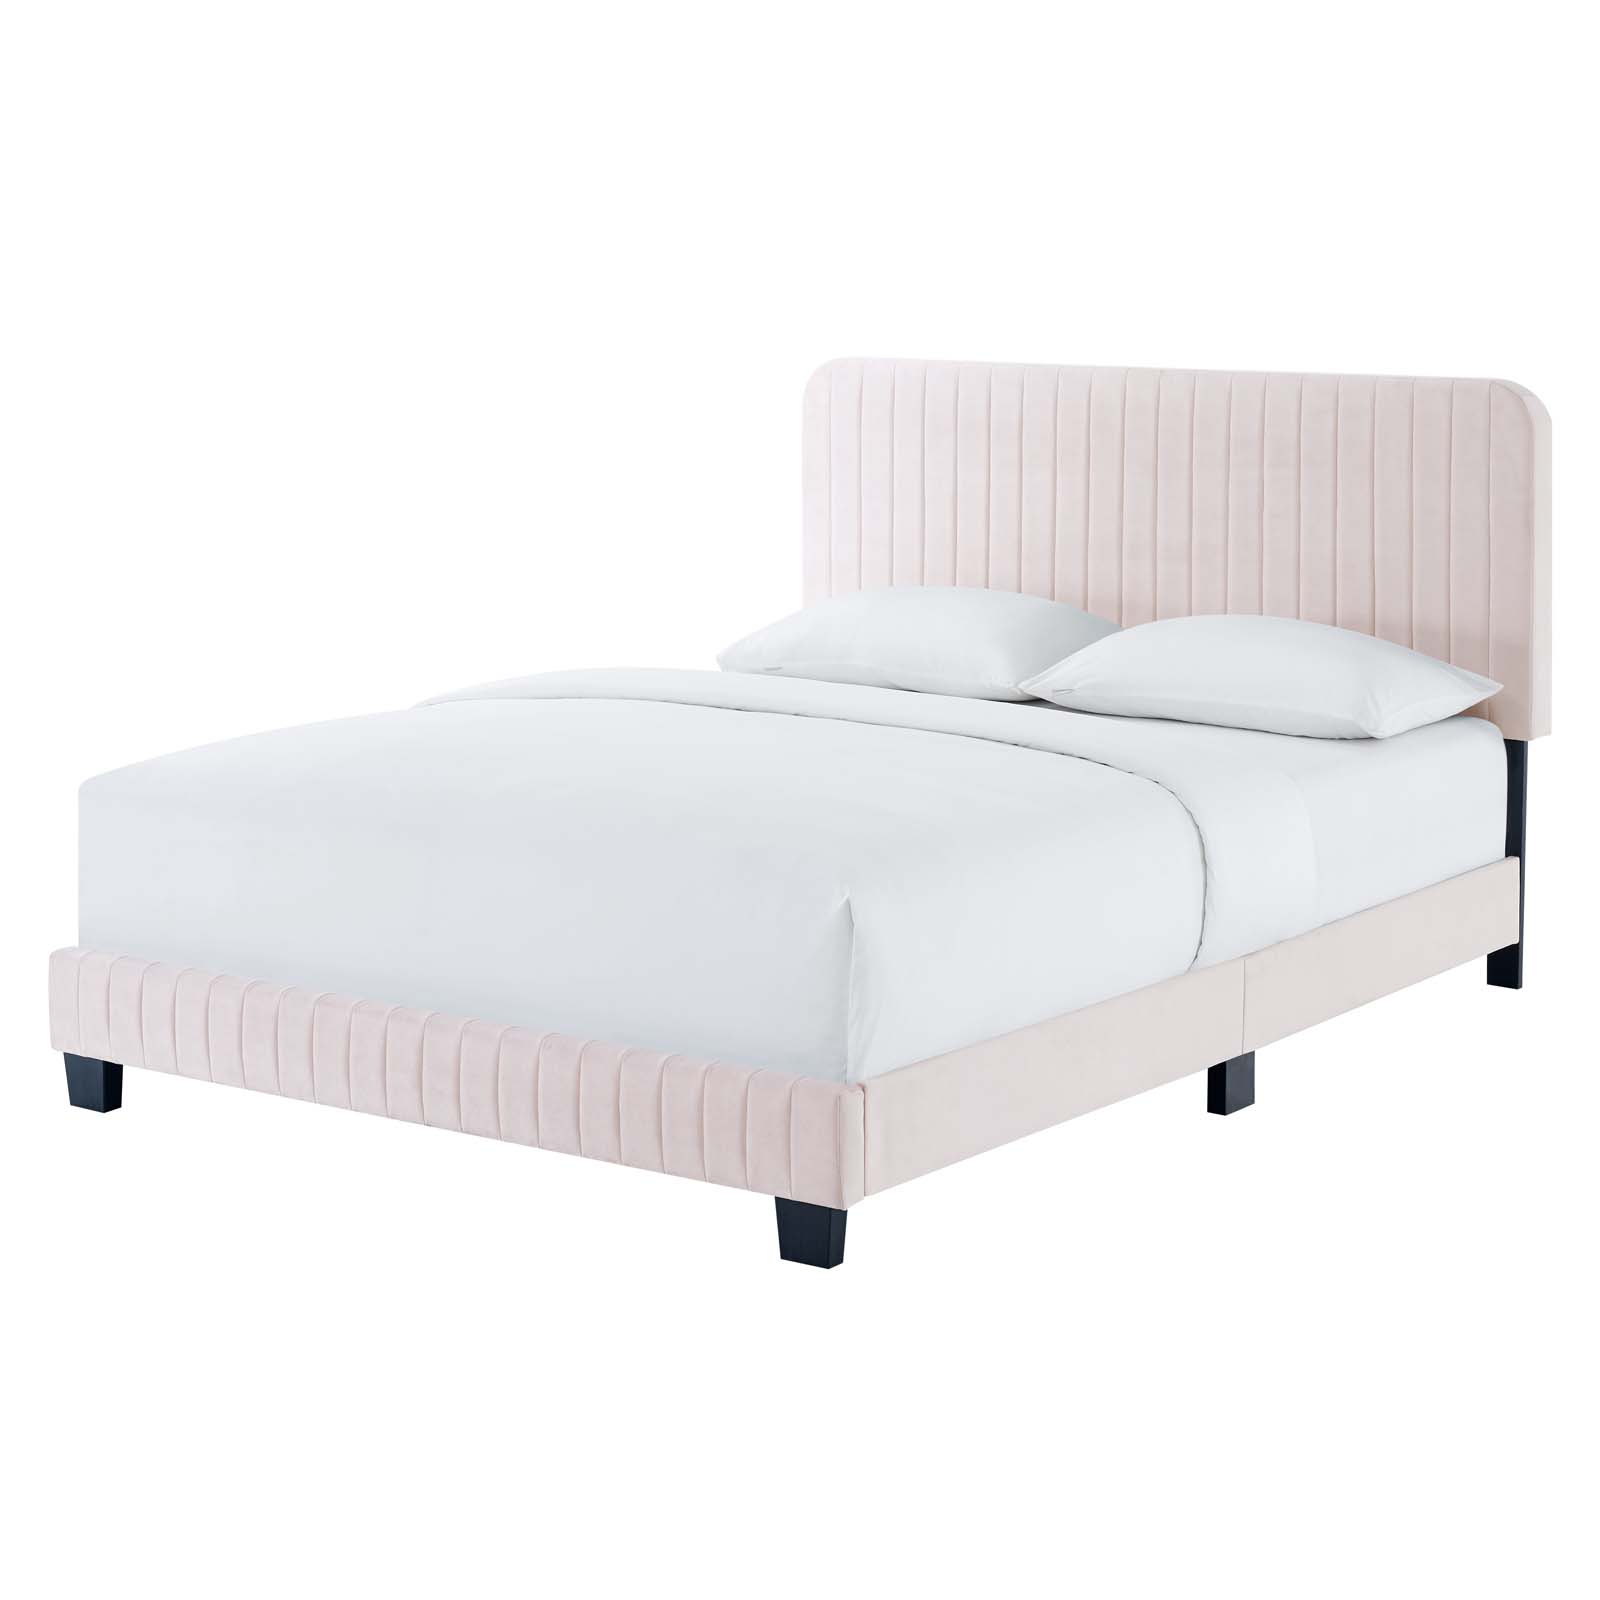 Tufted Platform Bed Frame, King Size, Velvet, Pink, Modern Contemporary Urban Design, Bedroom Master Guest Suite - image 1 of 8